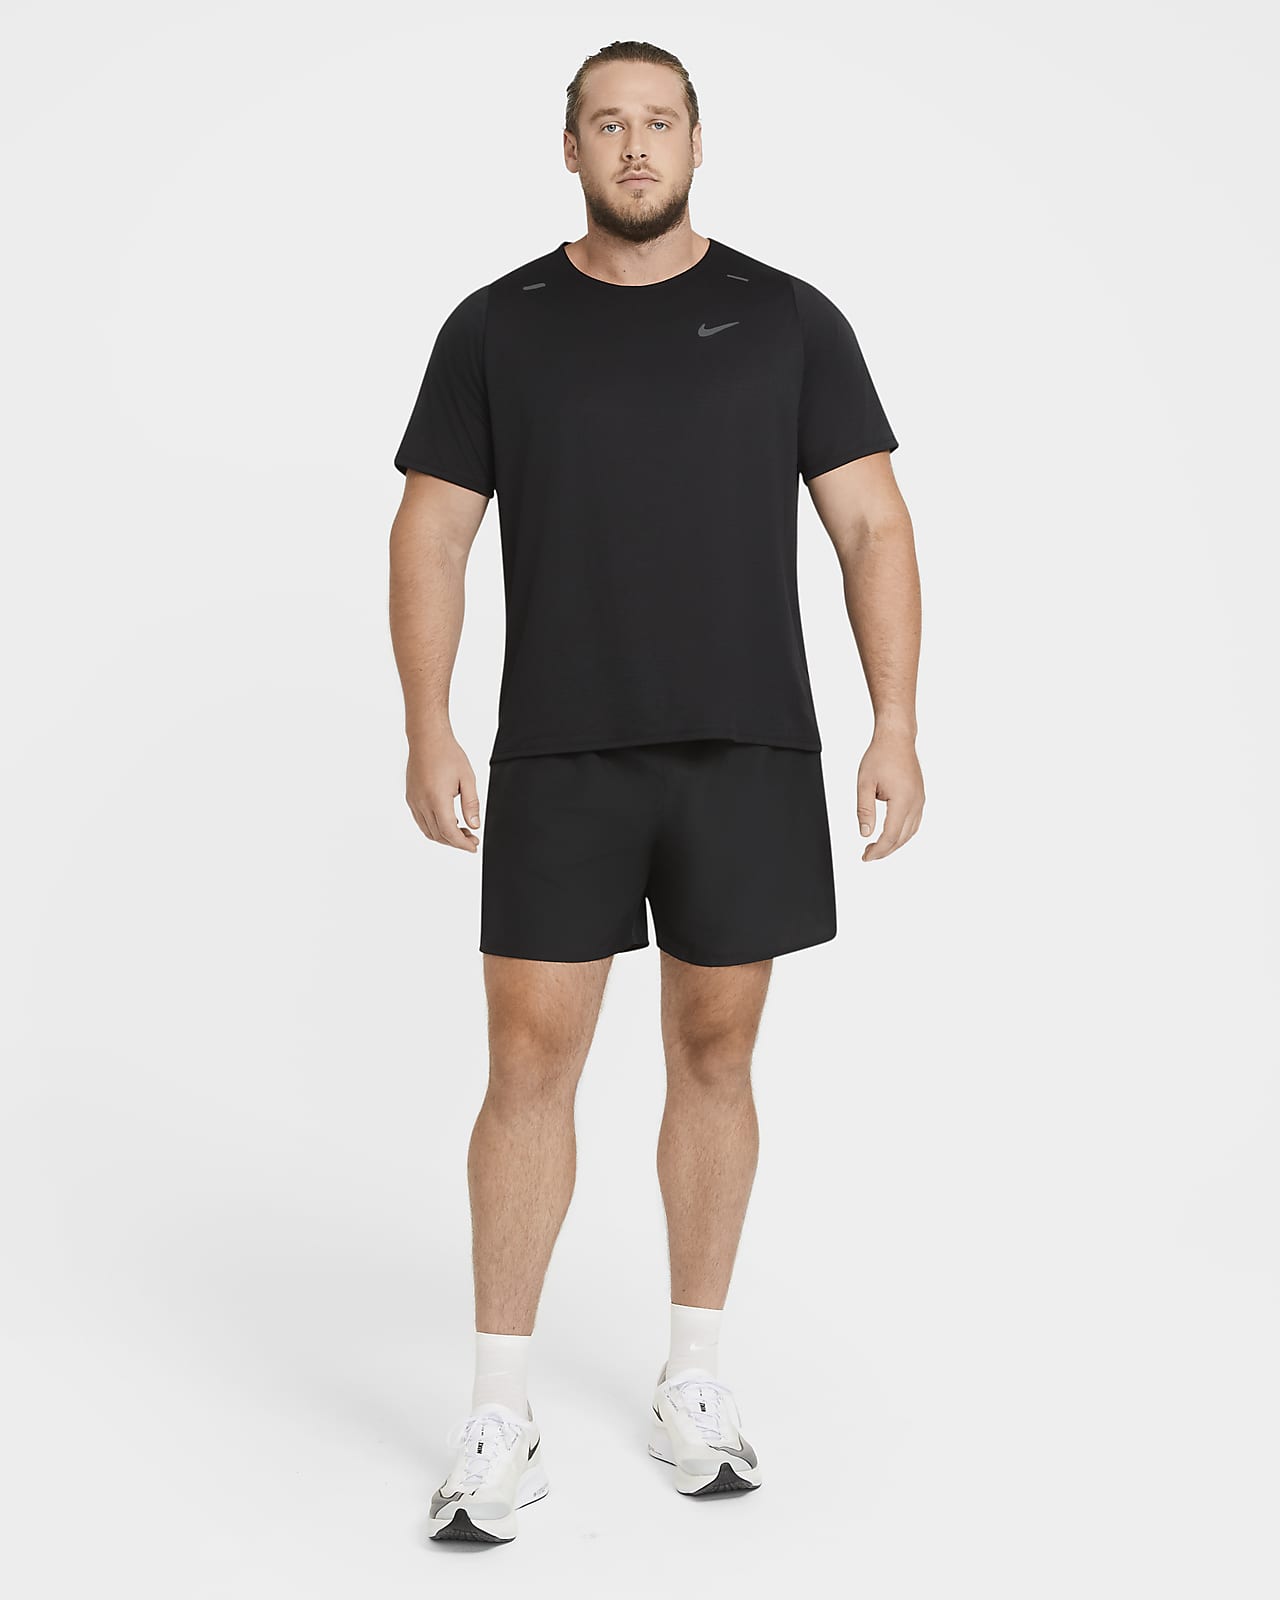 men's 7 lined running shorts